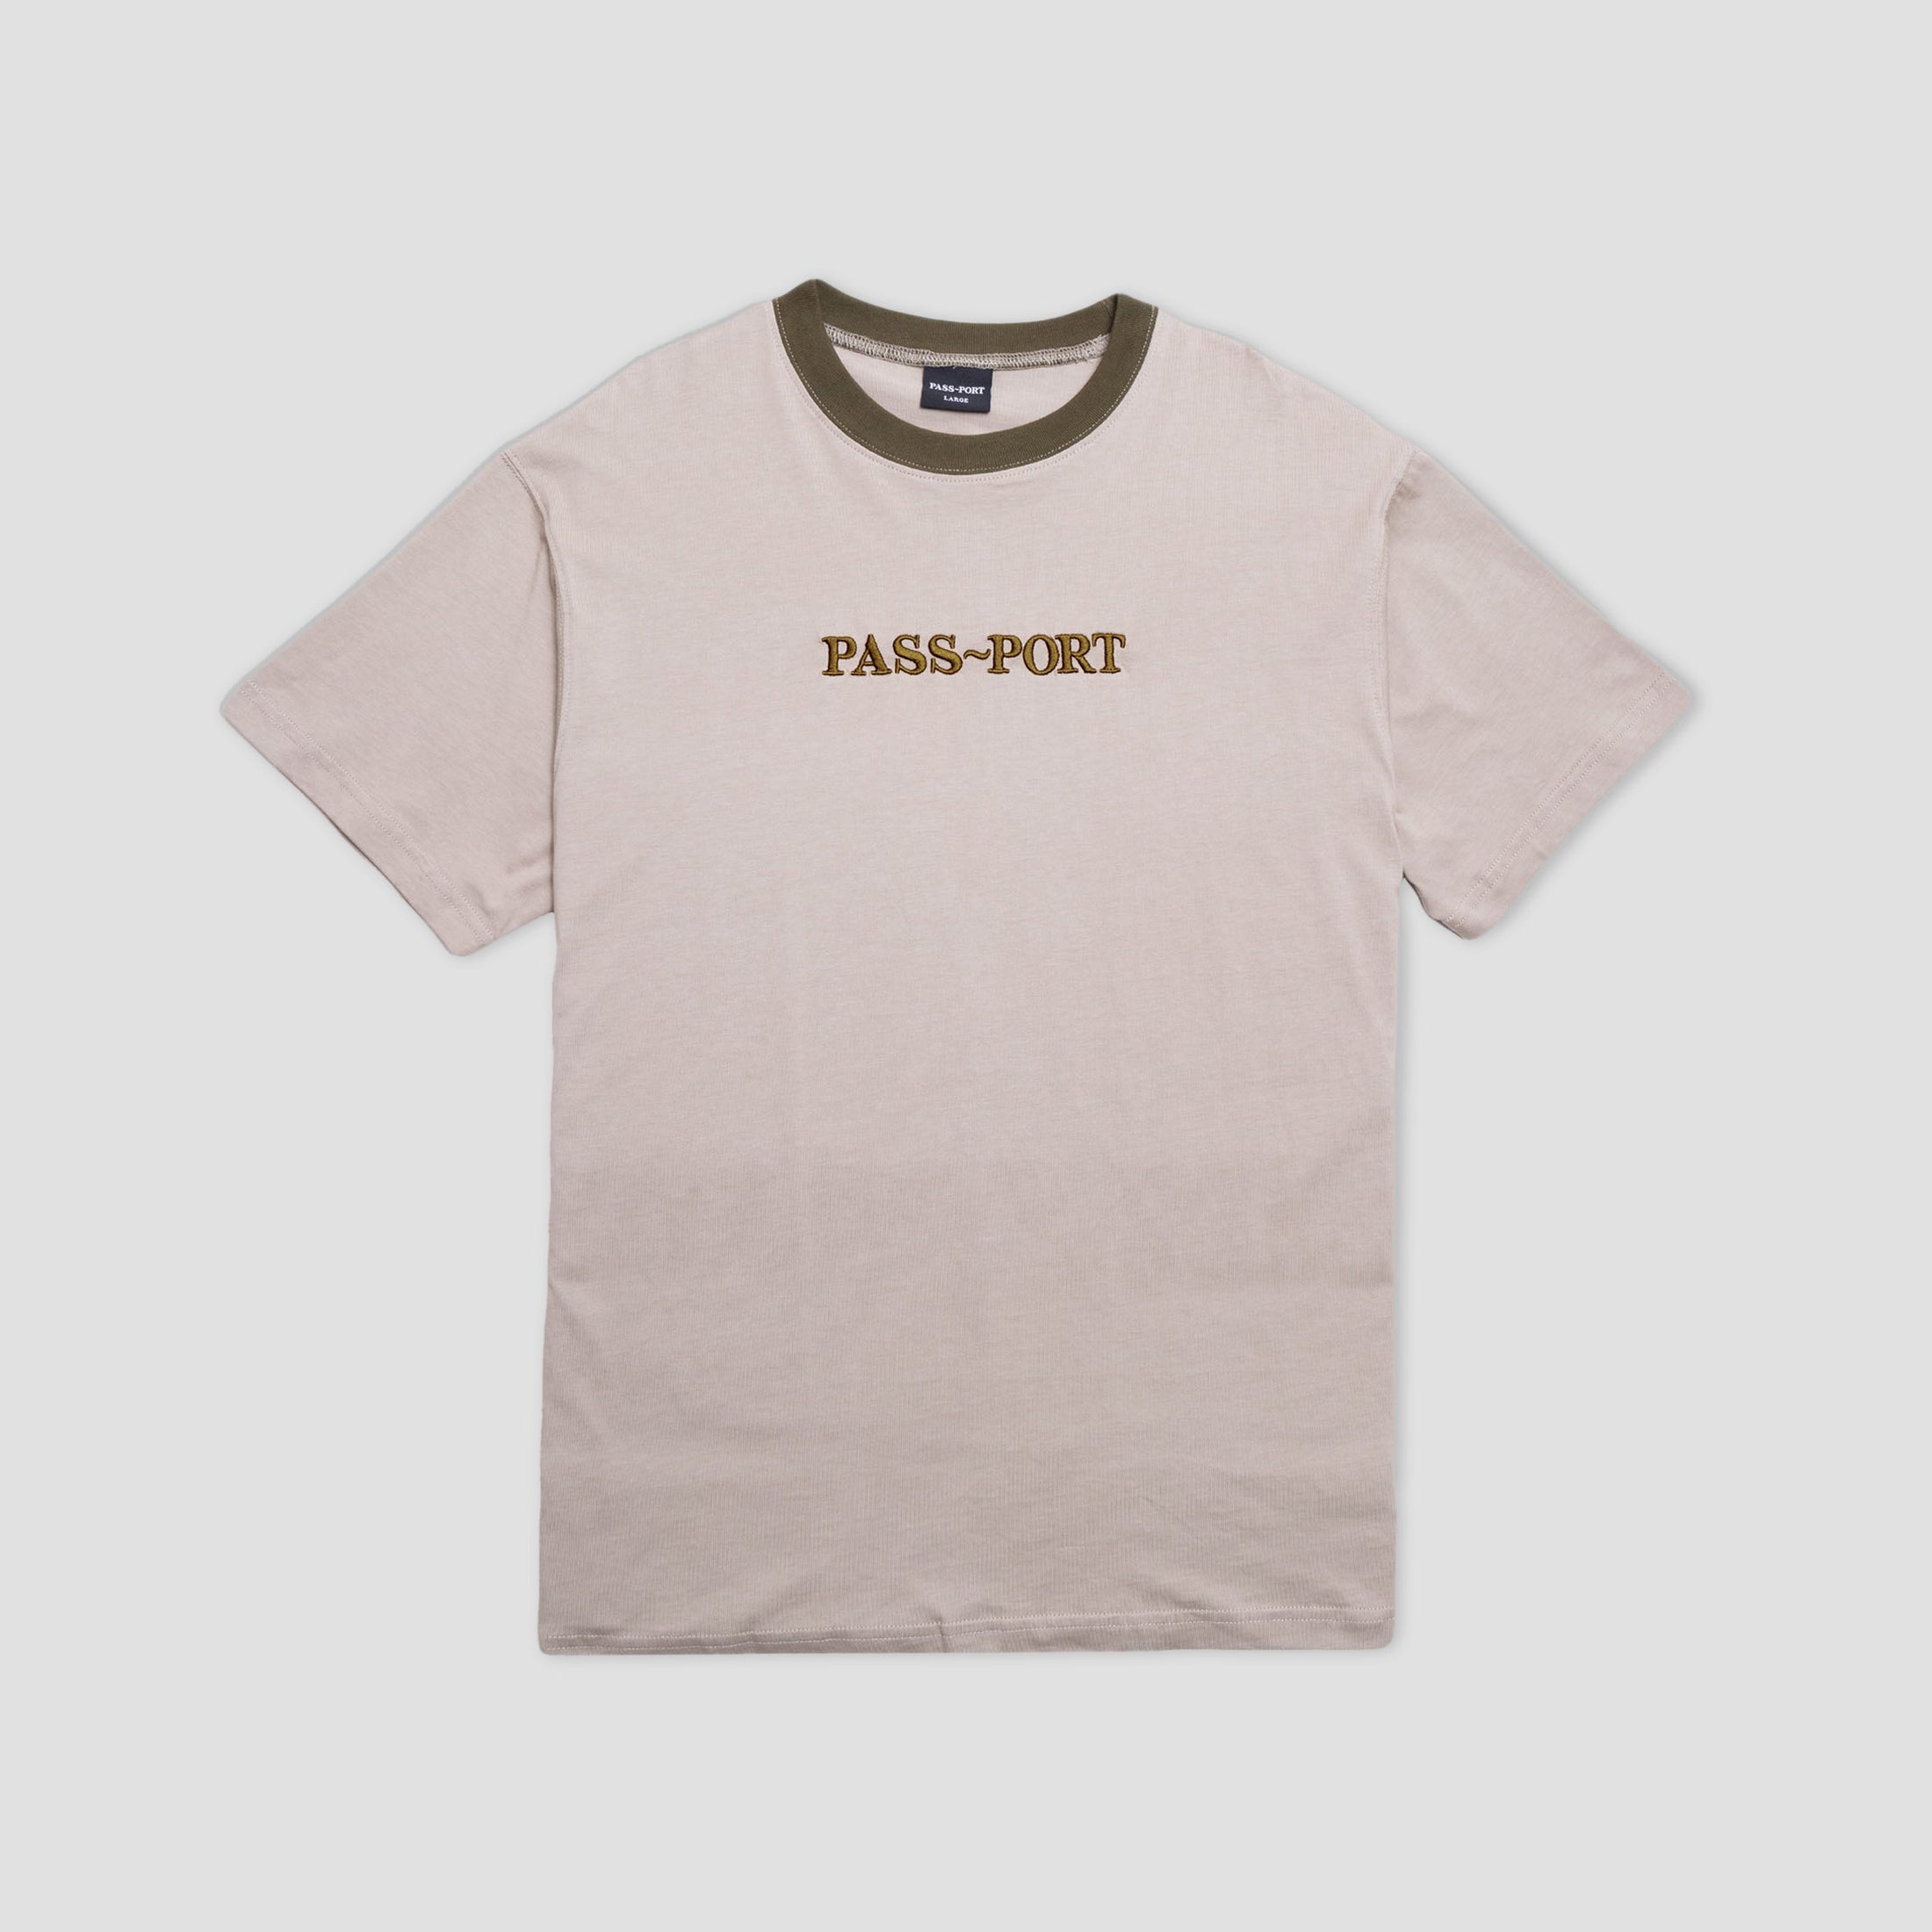 PassPort Official Contrast Organic T-Shirt Khaki